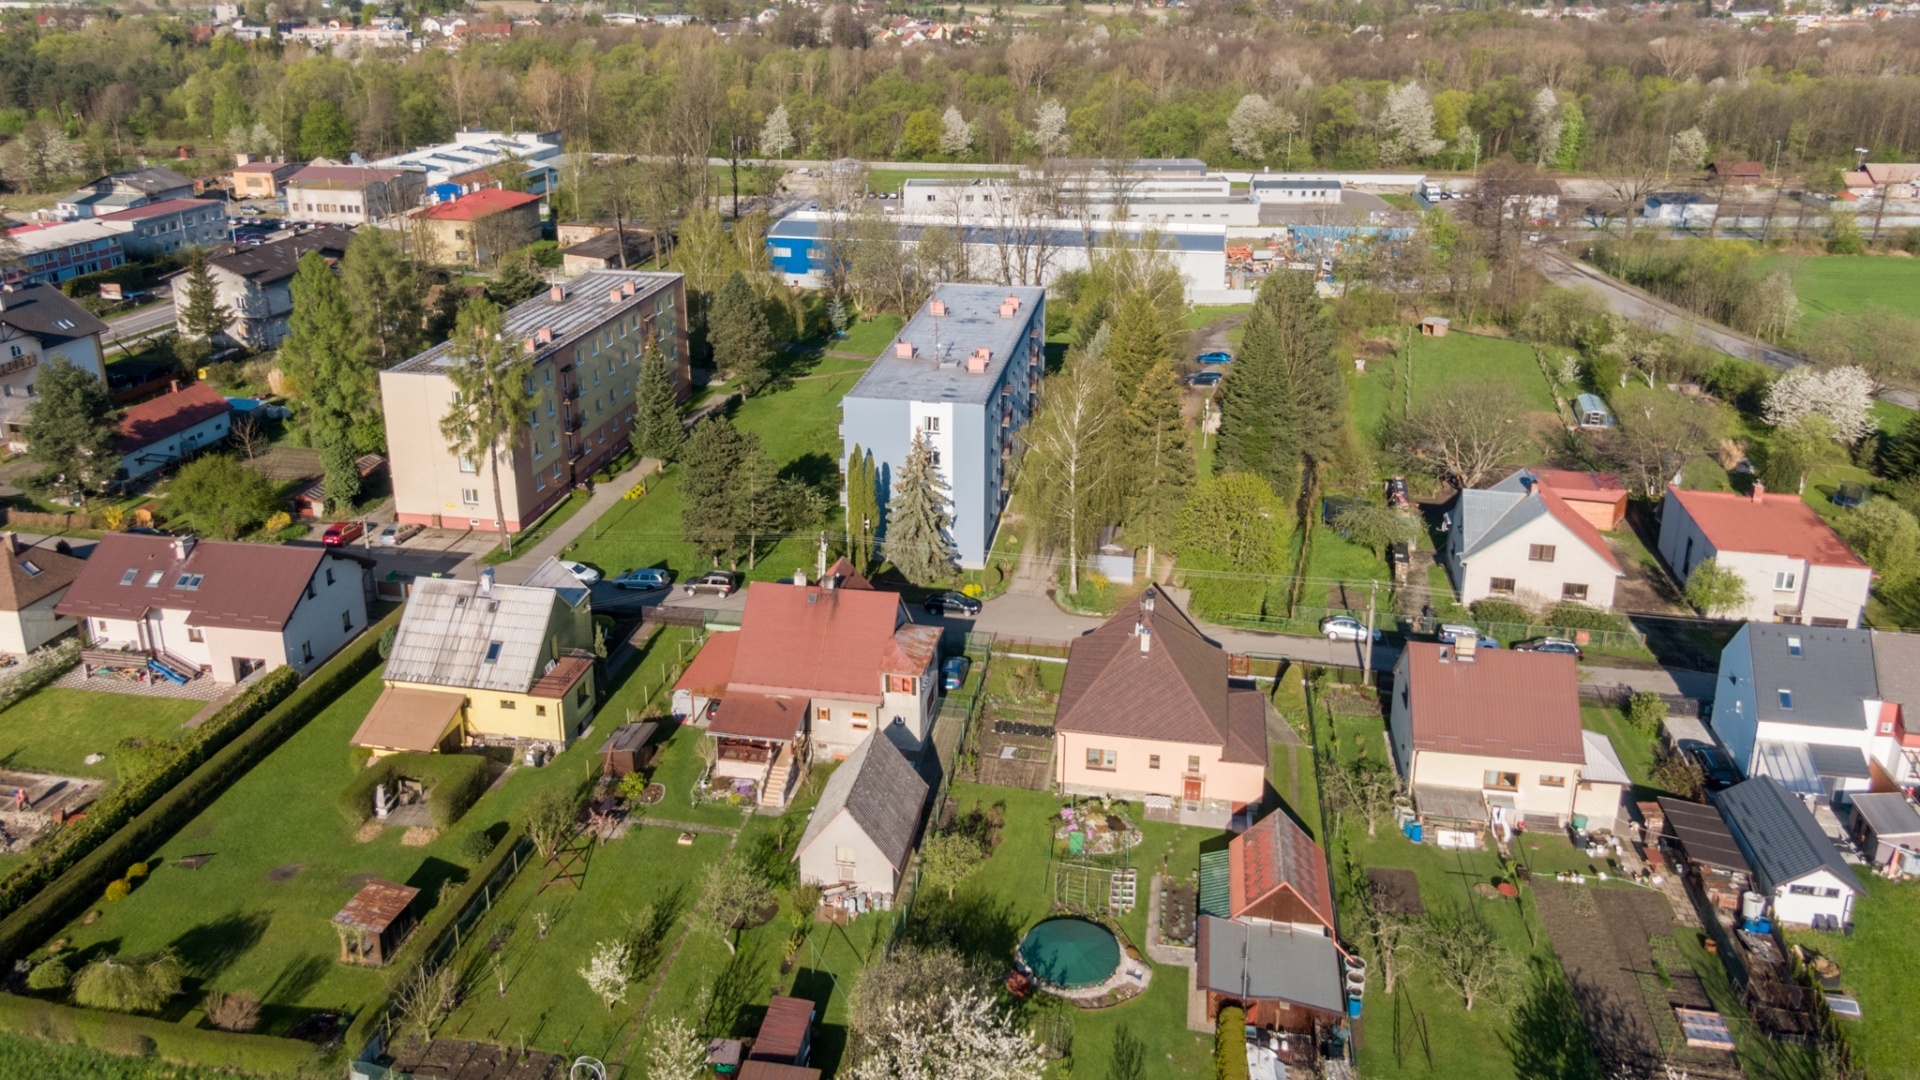 Prodej bytu 3+kk u přehrady, 60m² - Baška